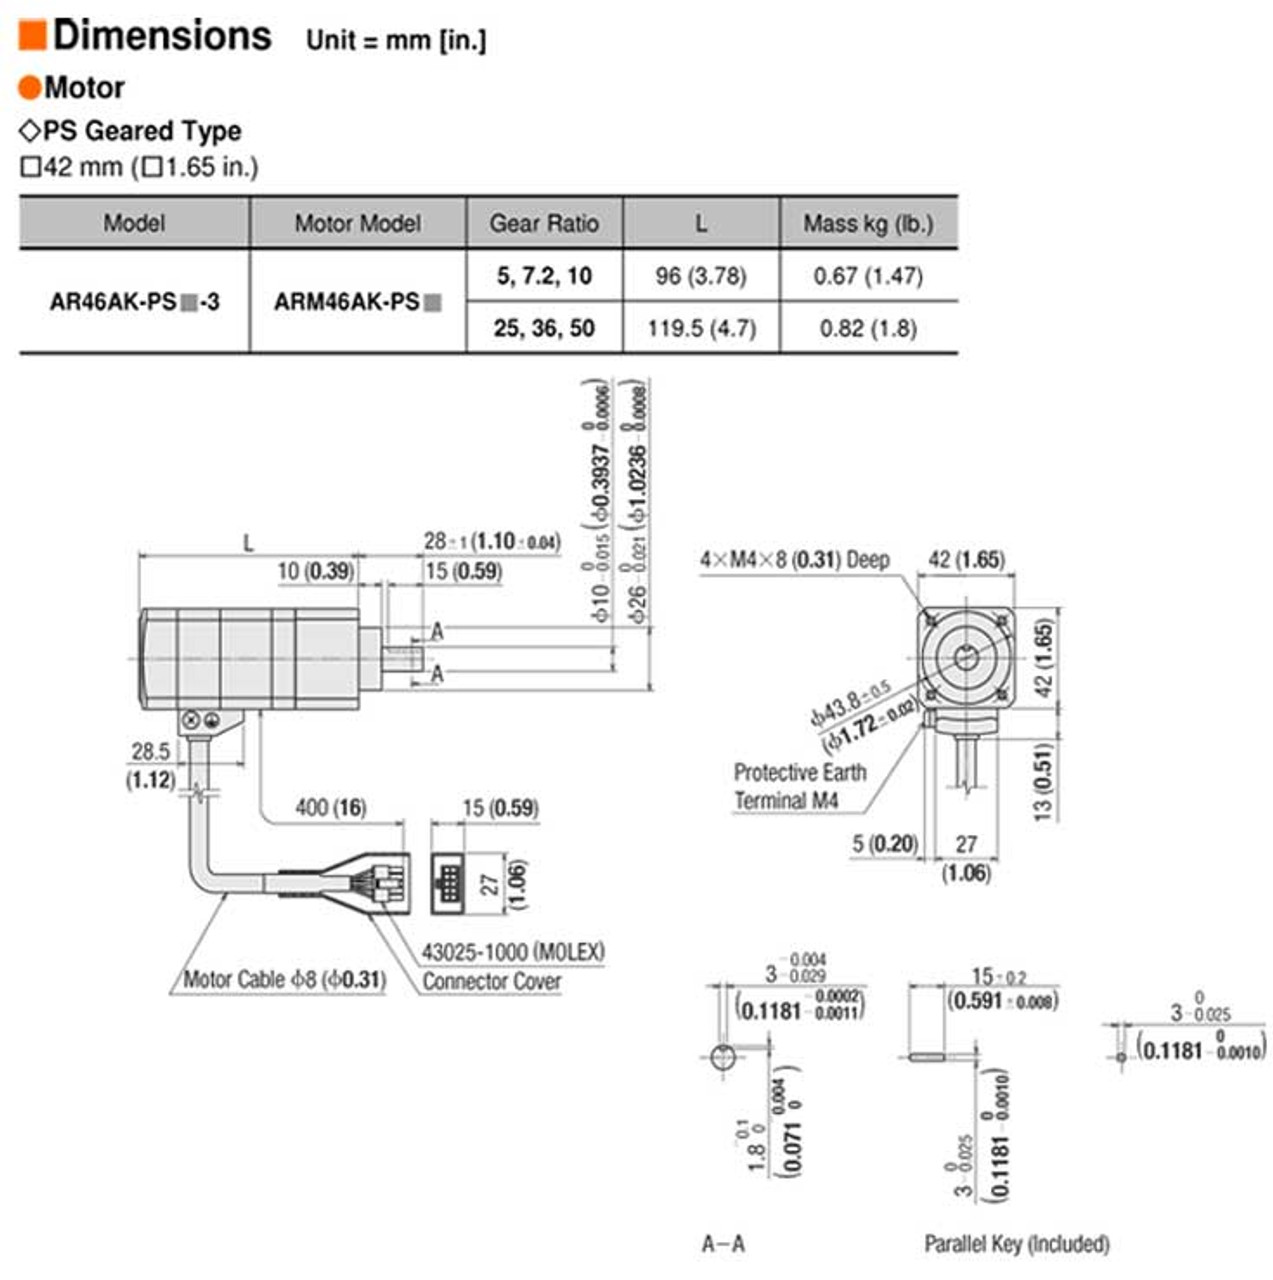 ARM46AK-PS36 - Dimensions